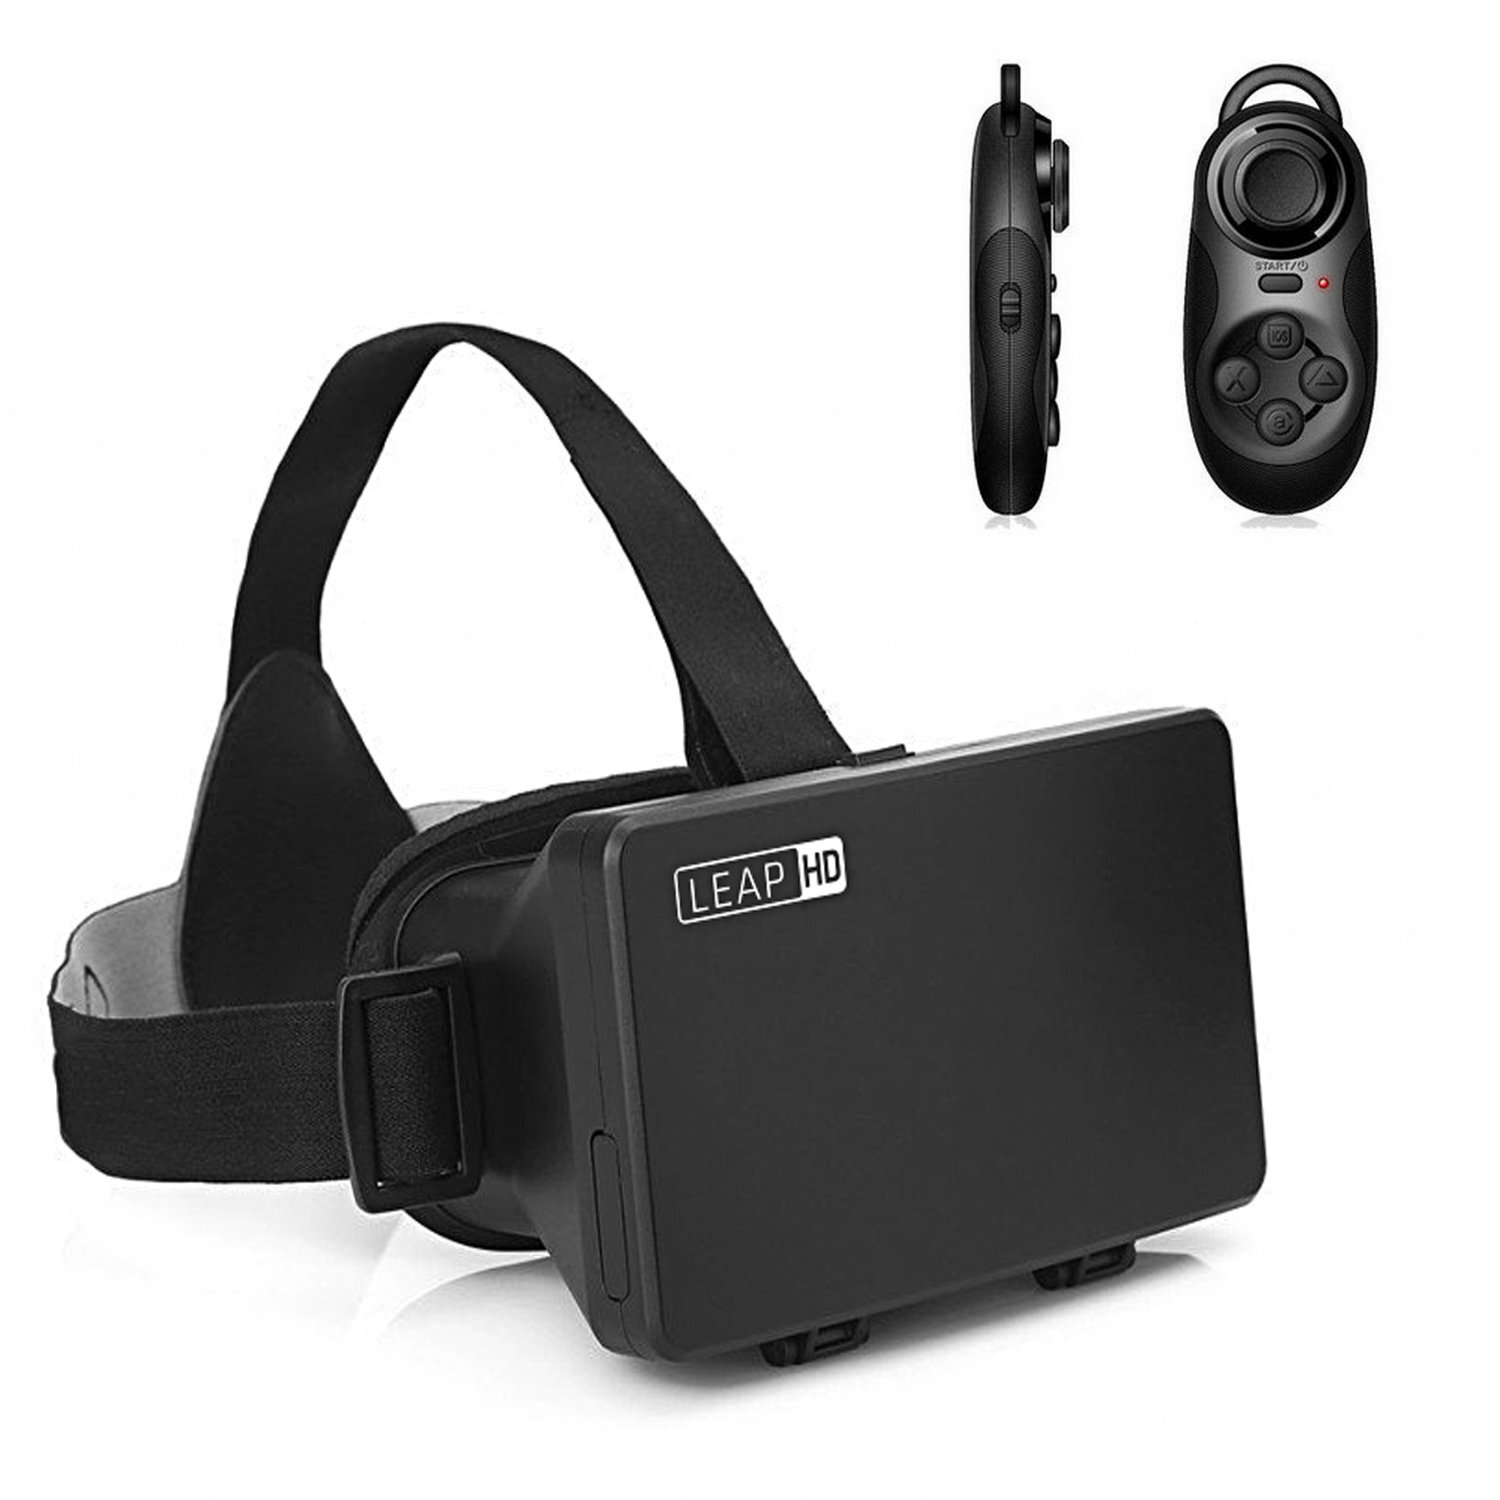 Gafas de Realidad Virtual para Movil Stuar / Gafas Realidad Virtual Baratas